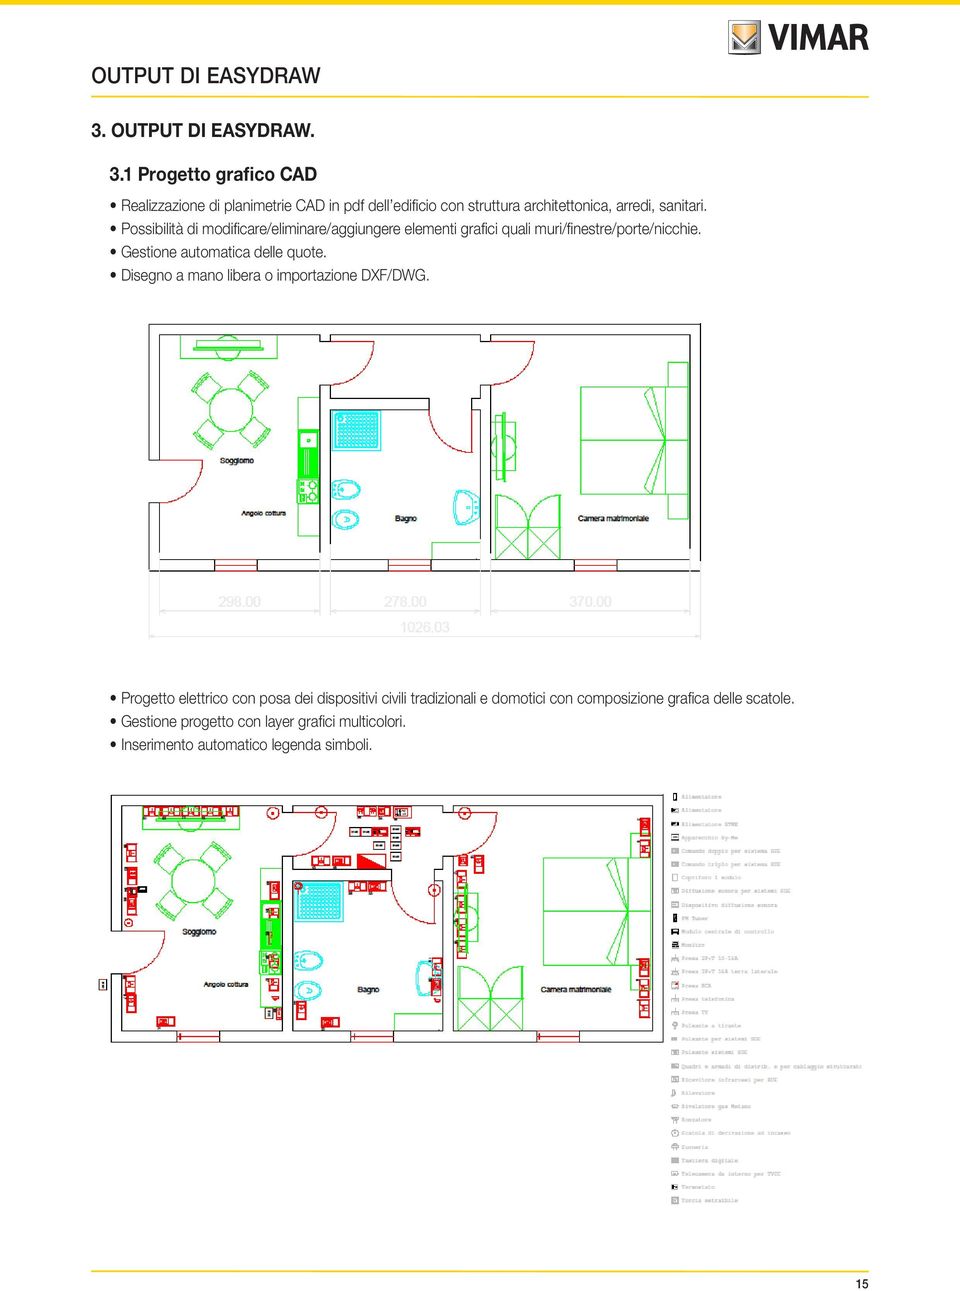 1 Progetto grafico CAD Realizzazione di planimetrie CAD in pdf dell edificio con struttura architettonica, arredi, sanitari.